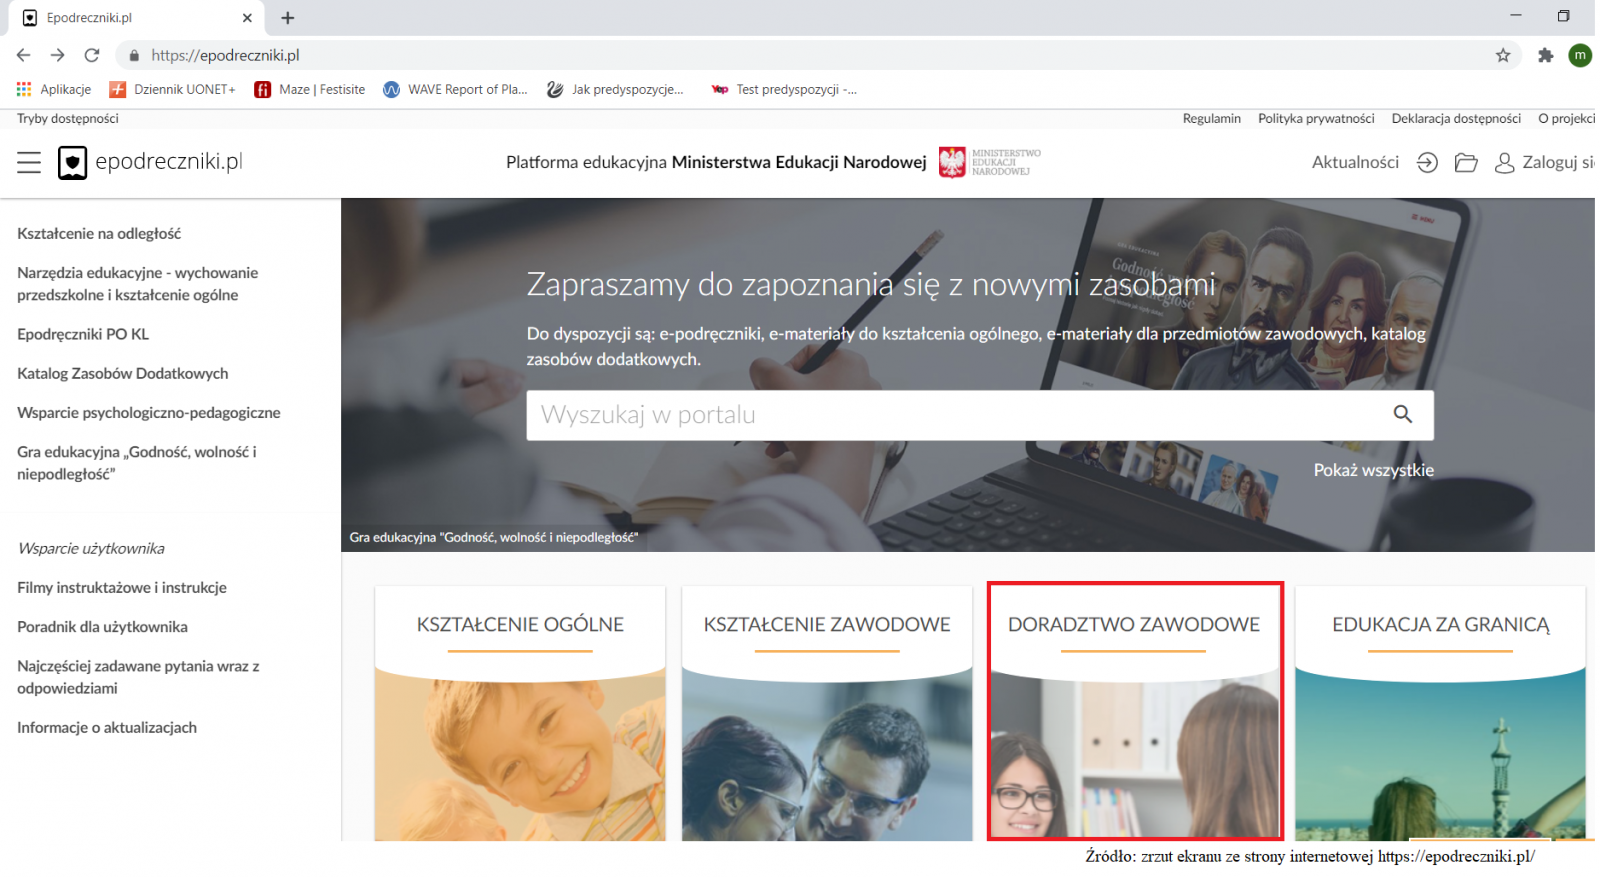 Zrzut ekranu strony głównej epodreczniki.pl Platformy edukacyjnej Ministerstwa Edukacji Narodowej z zaznaczonym w czerwona ramkę kaflem DORADZTWO ZAWODOWE